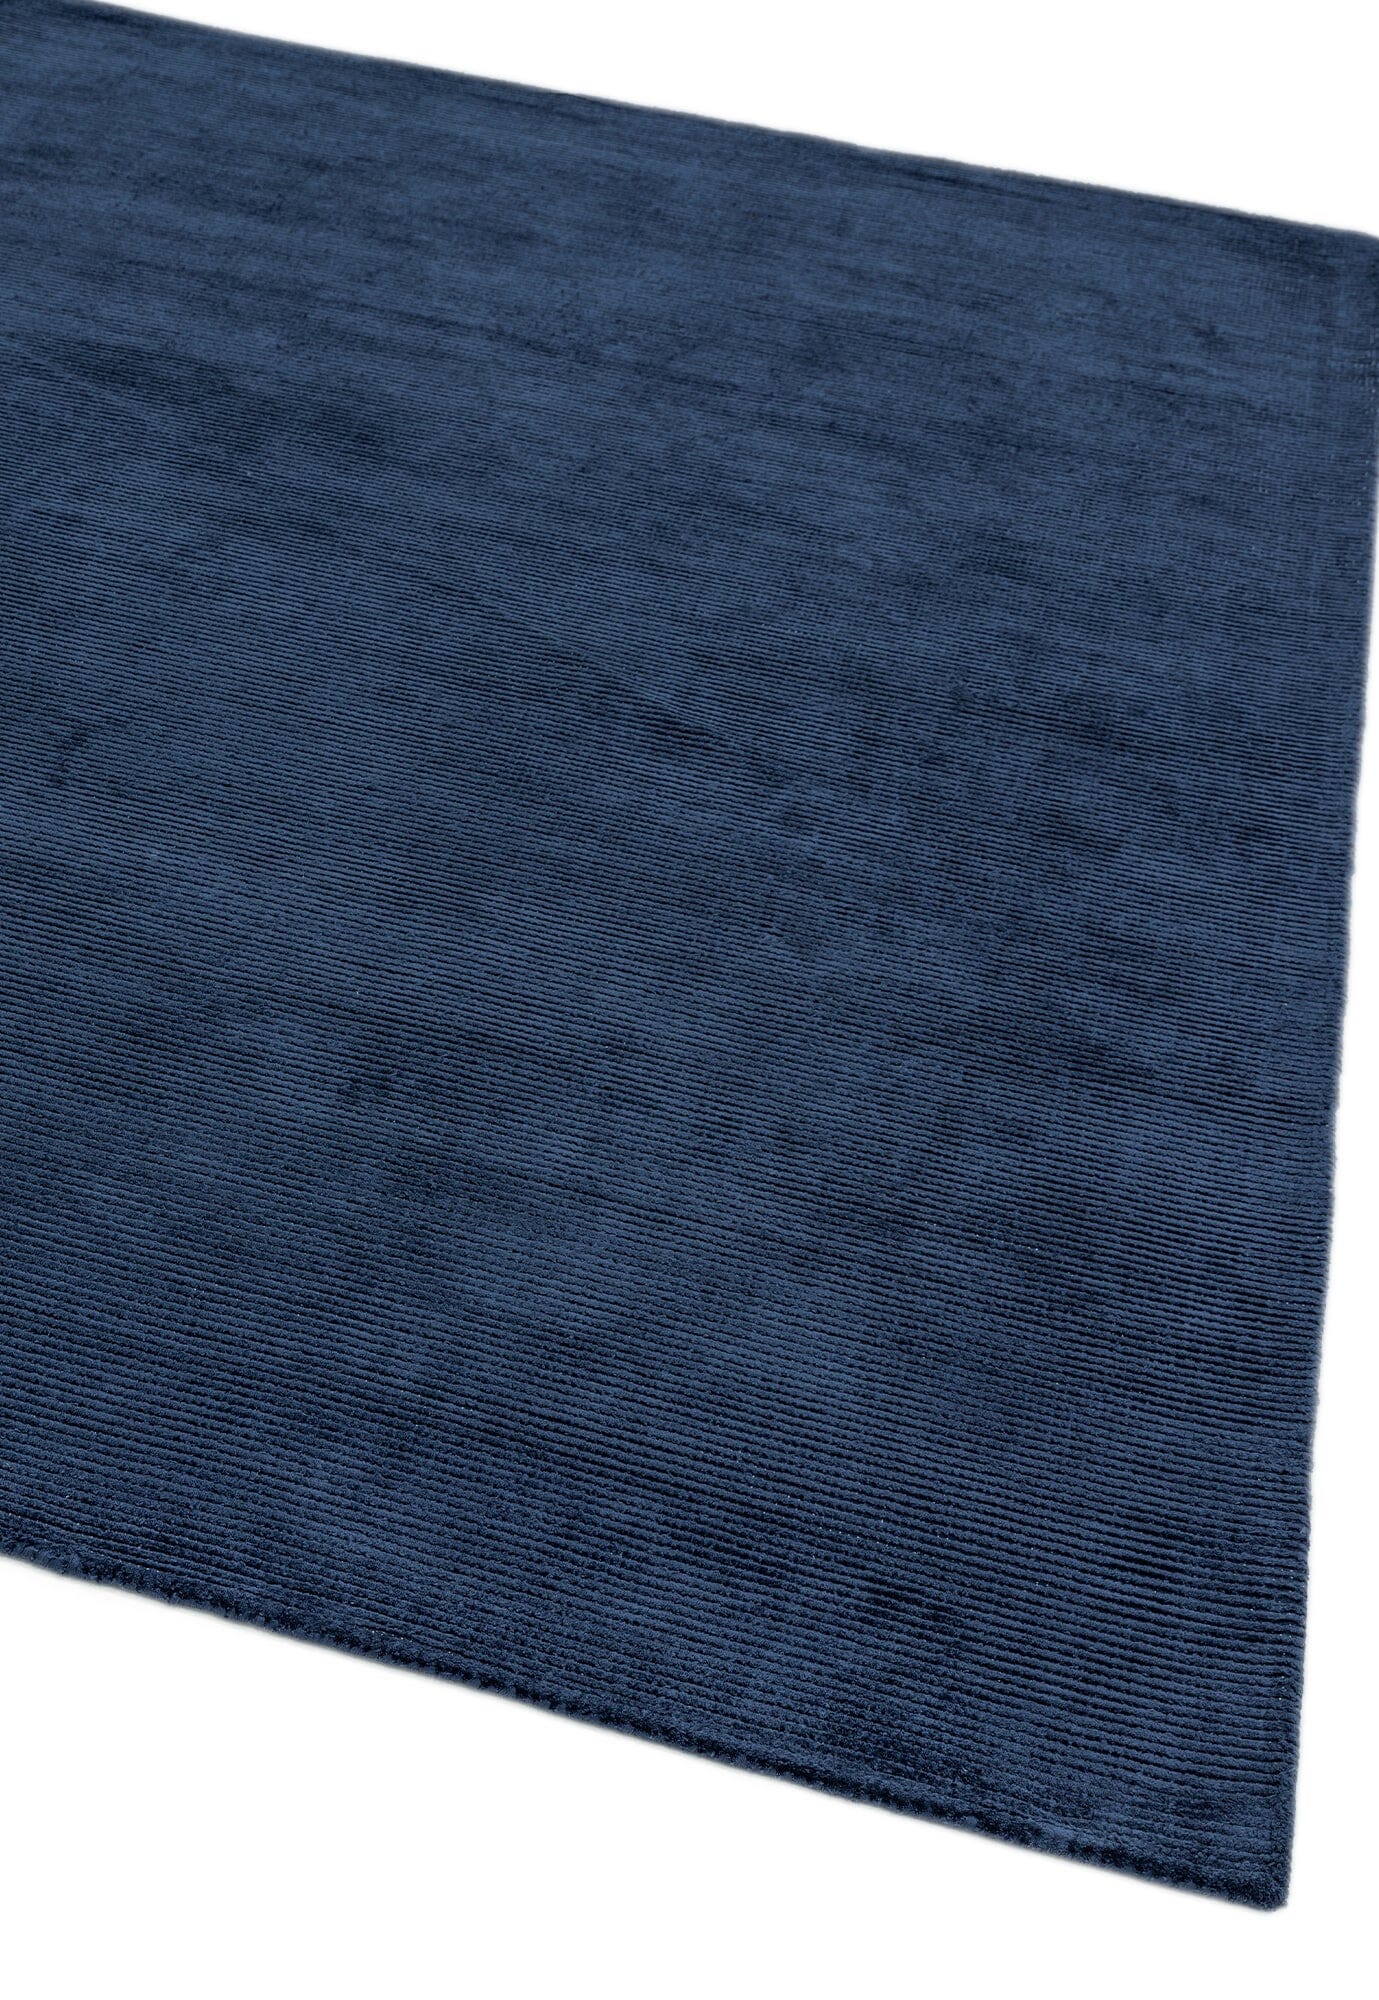 Asiatic Carpets Reko Hand Woven Rug Navy - 160 x 230cm